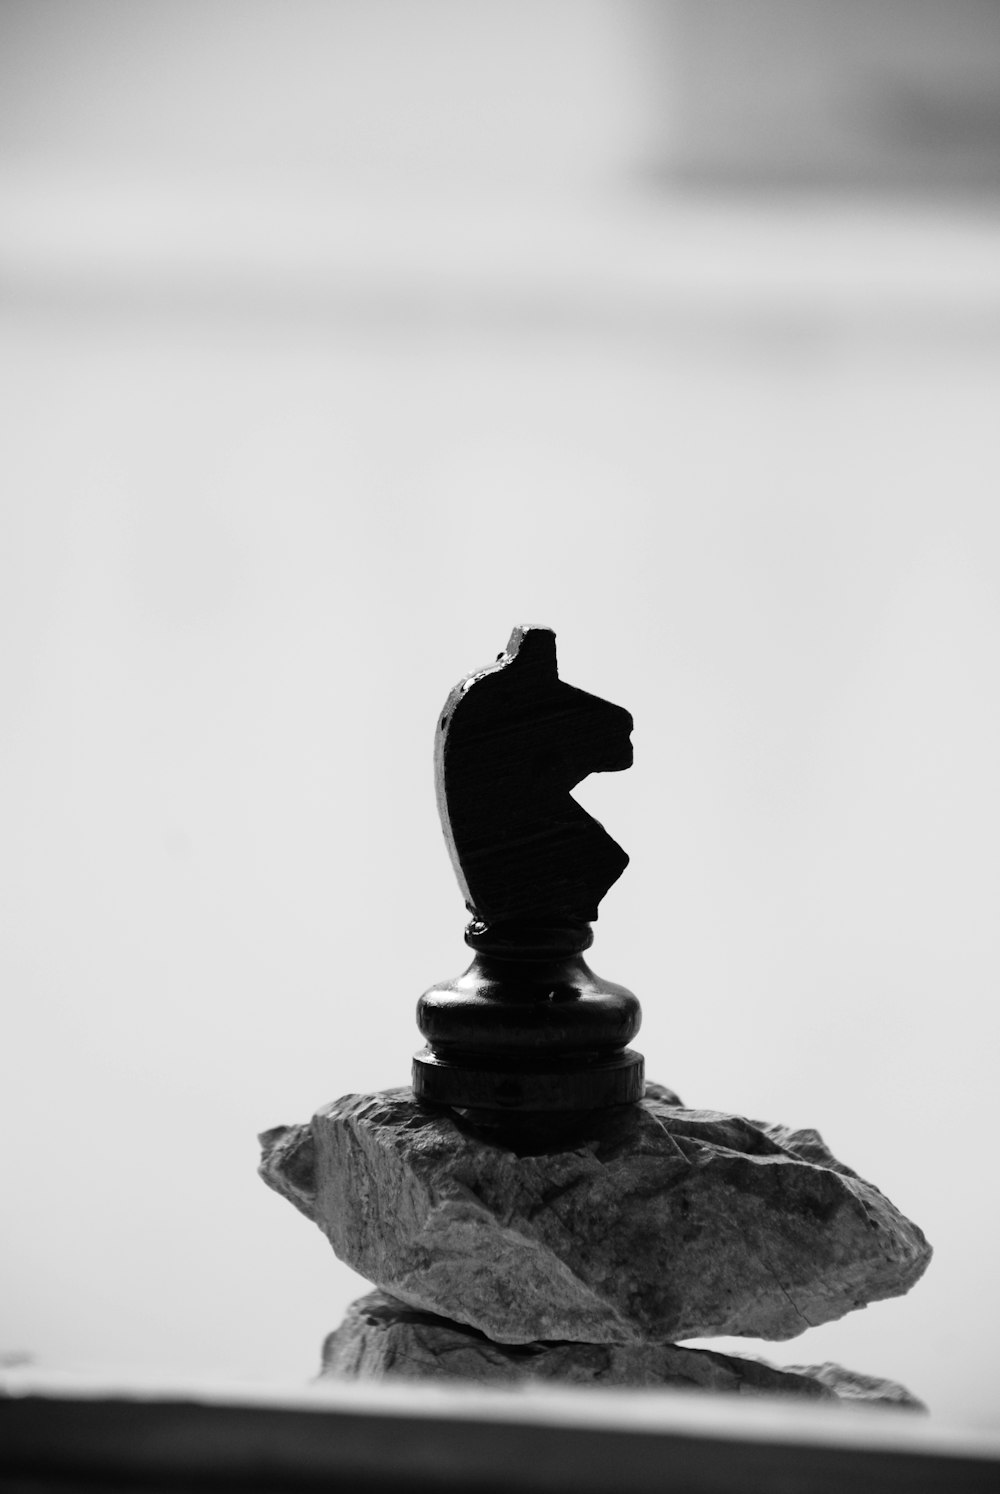 fotografia in scala di grigi di scacchi cavalieri